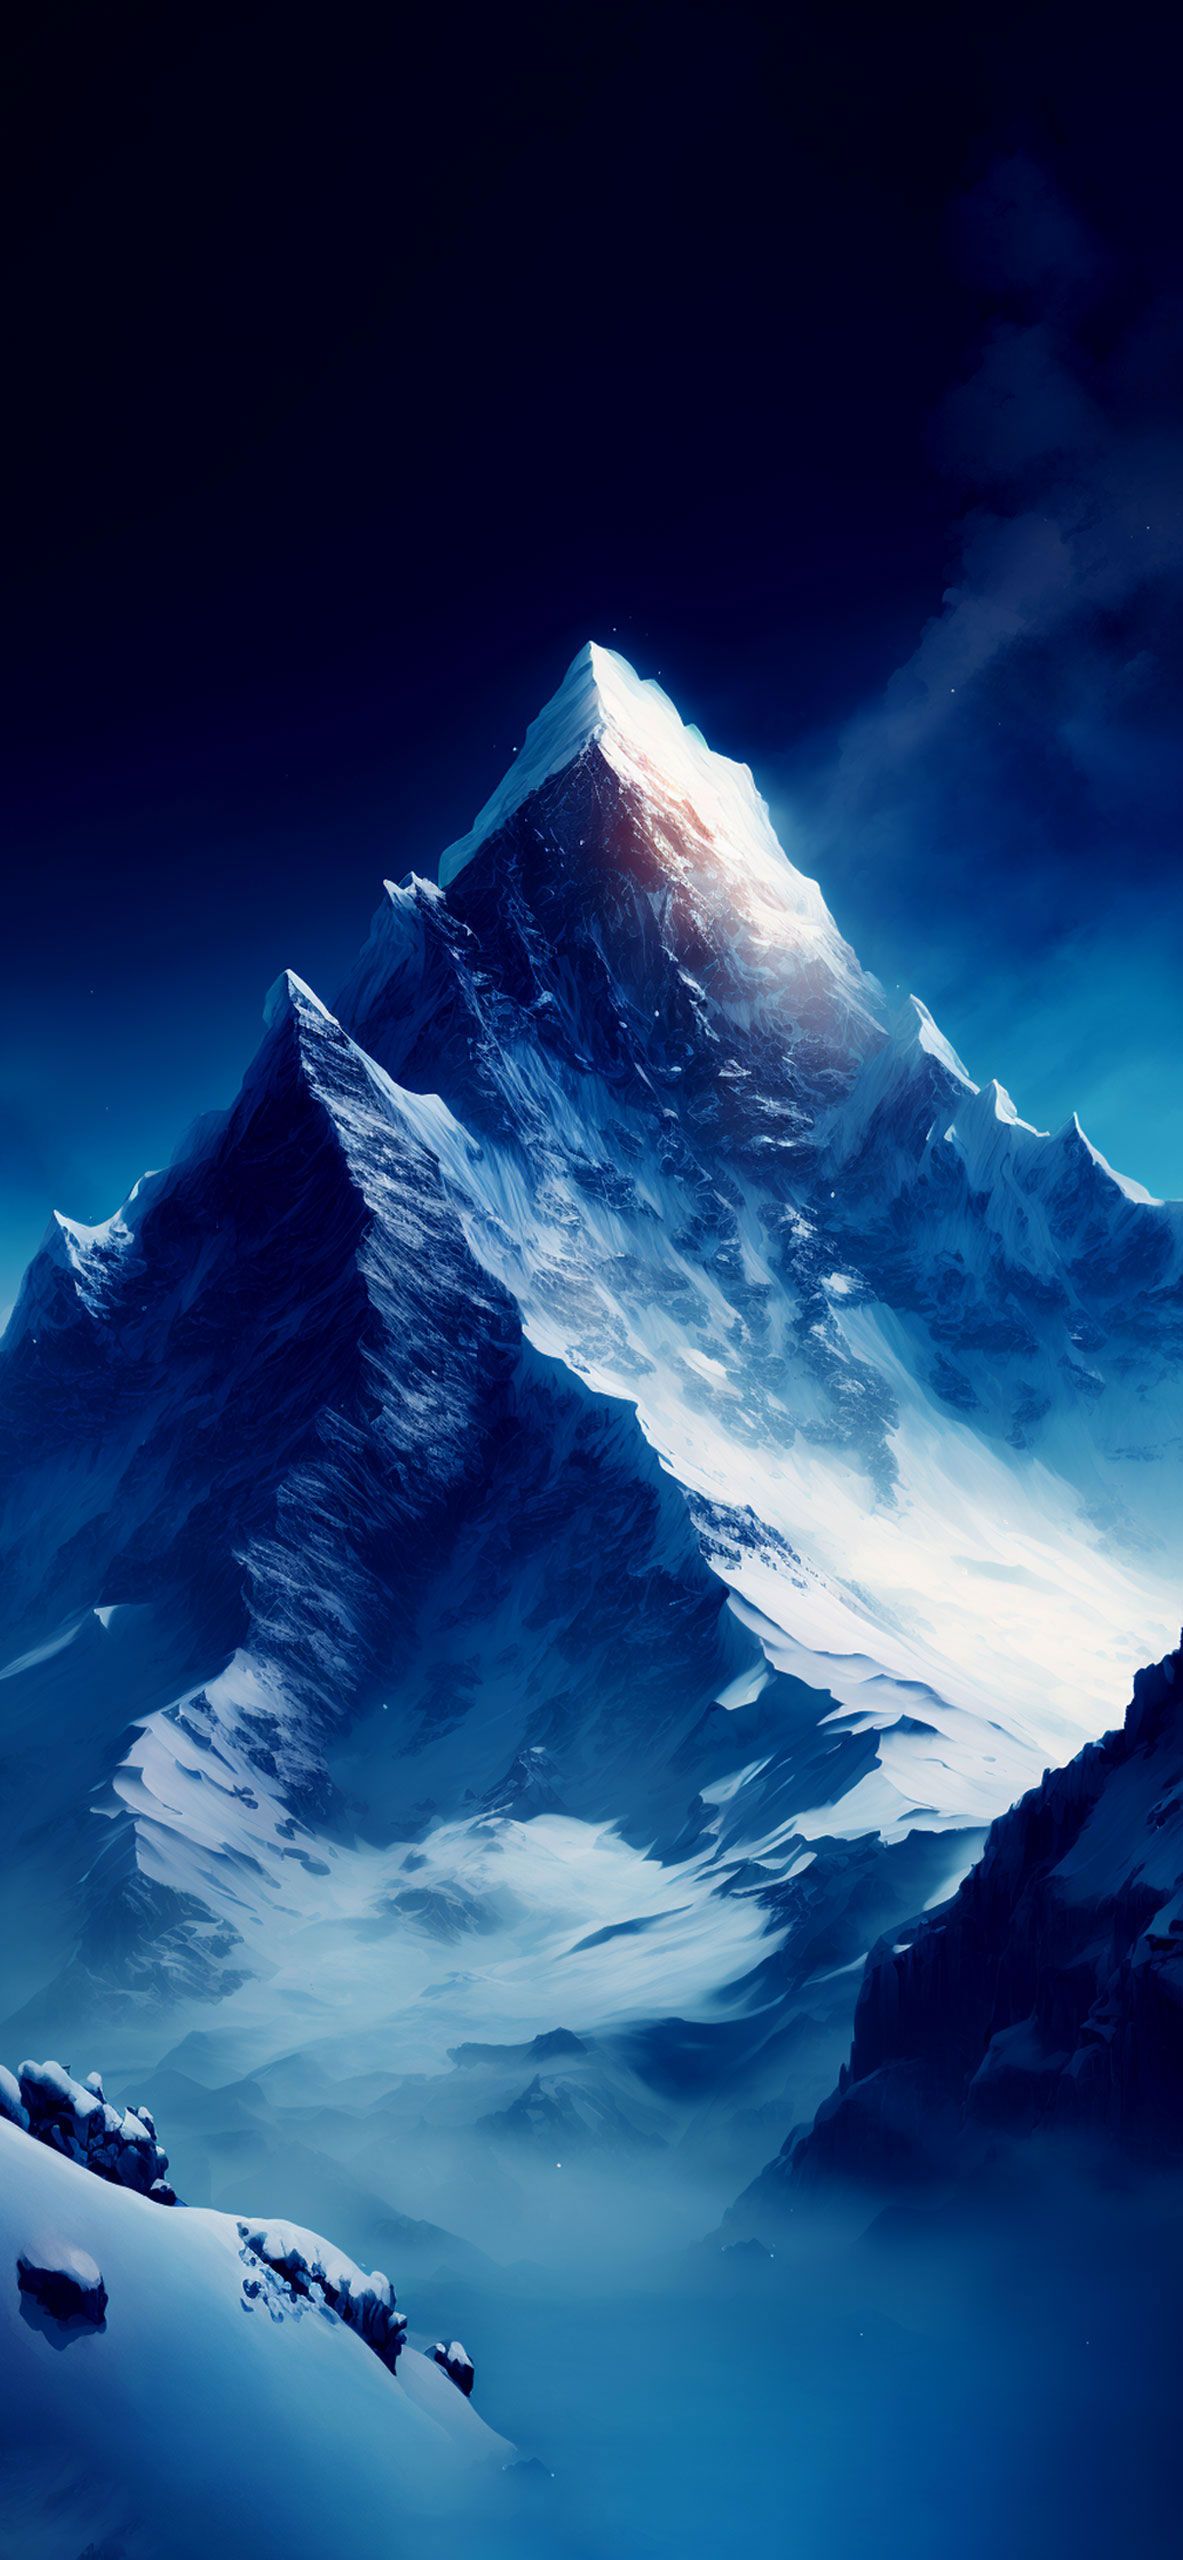 Everest Art Wallpaper Aesthetic Wallpaper for iPhone